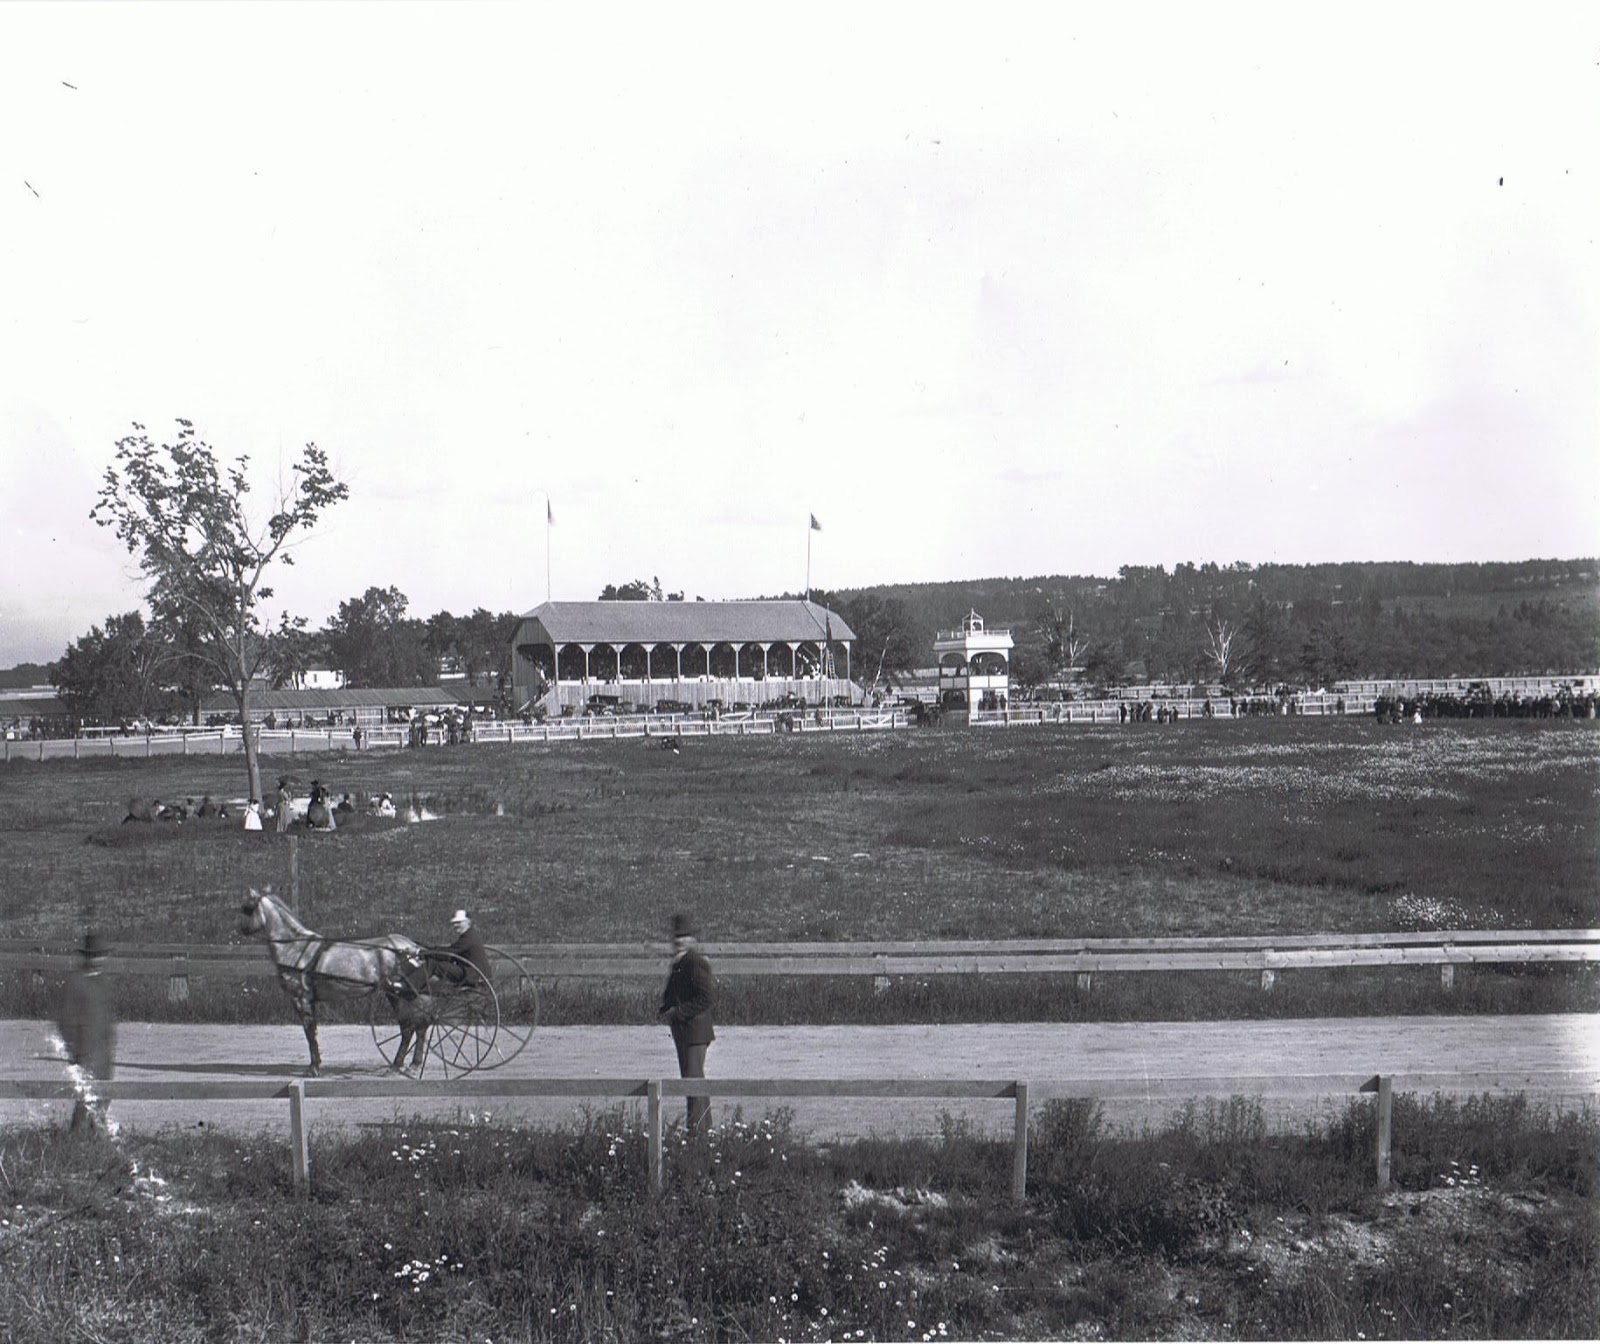 Fredericton Raceway